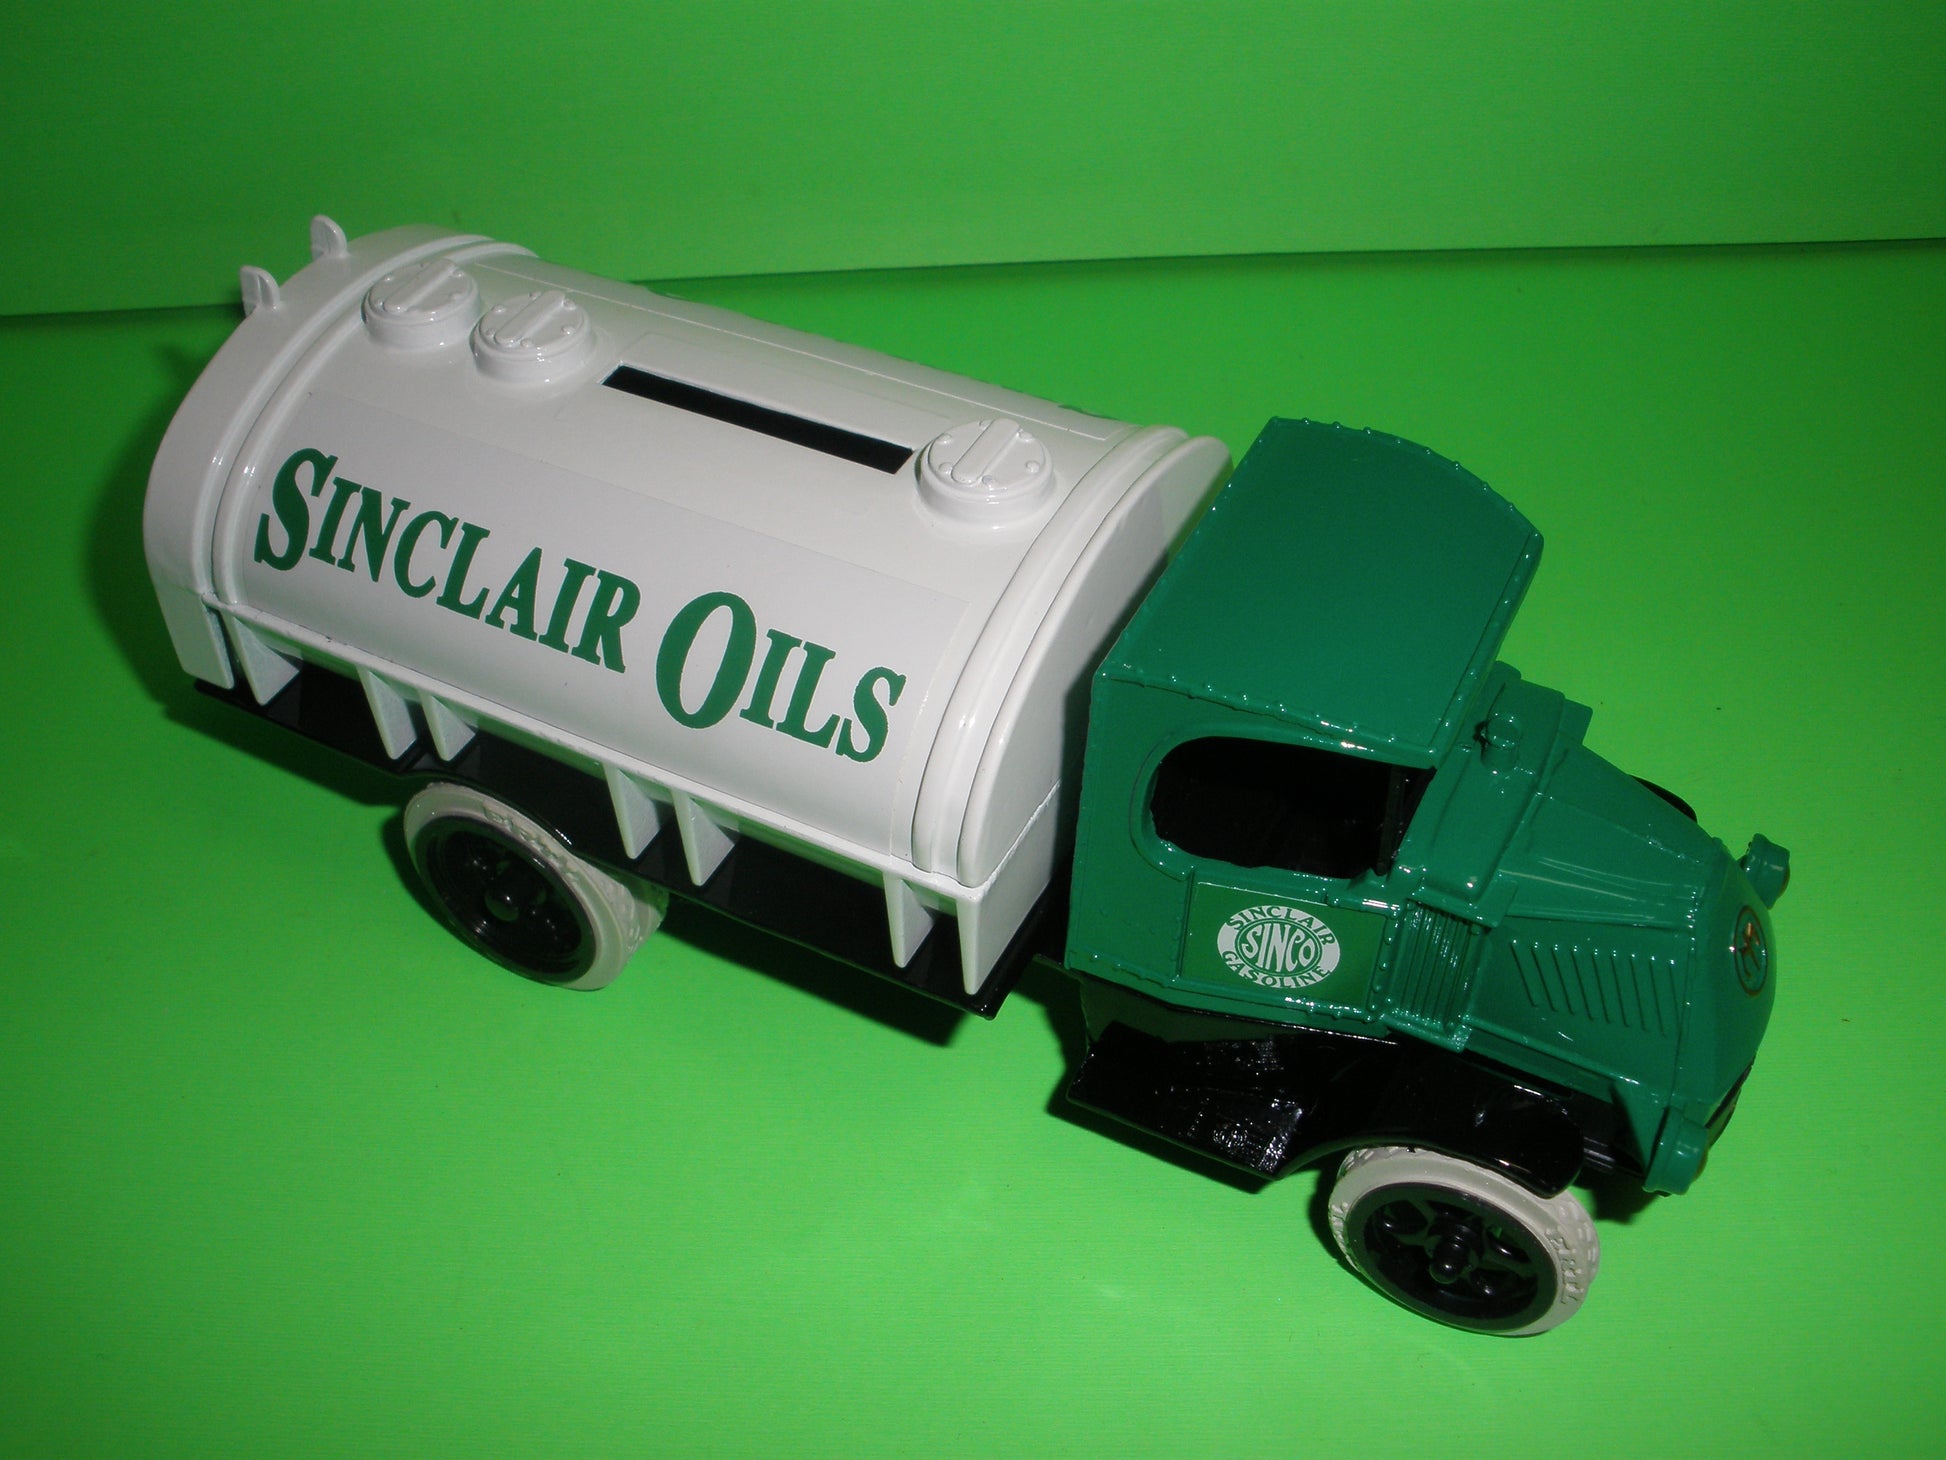 #1 - Sinclair 1926 Mack Tanker Truck